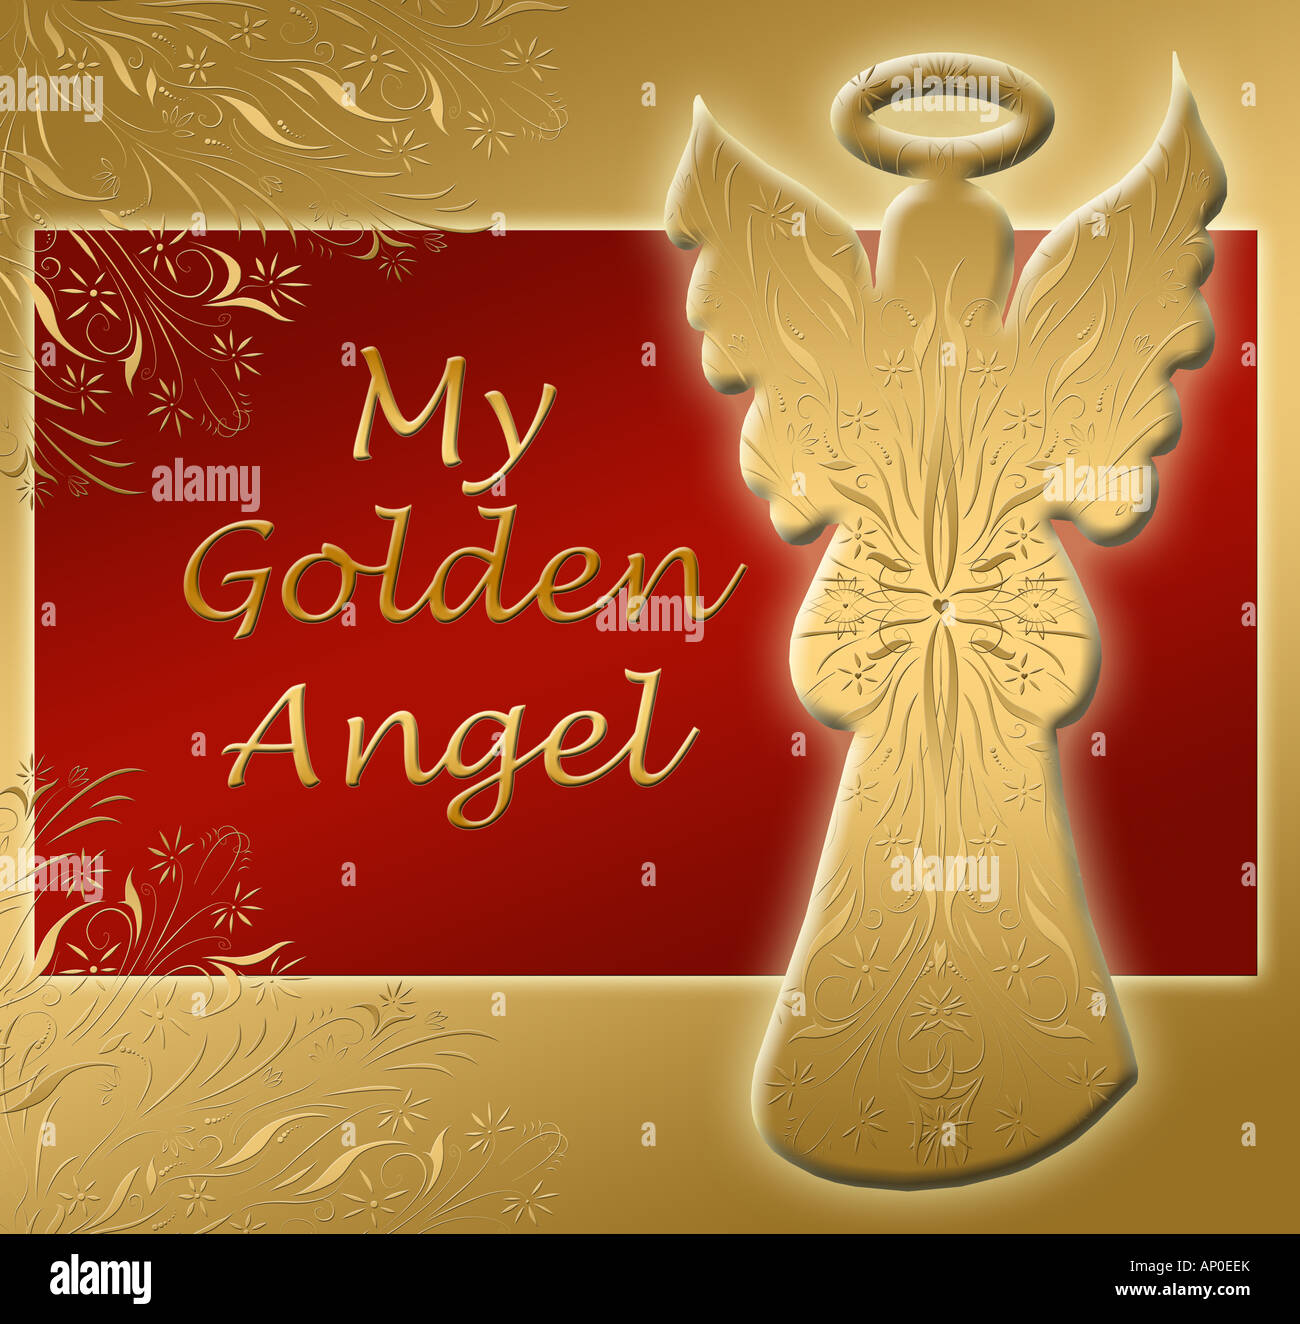 Rouge et Or magnifique image et texte pour un ange d'or Banque D'Images